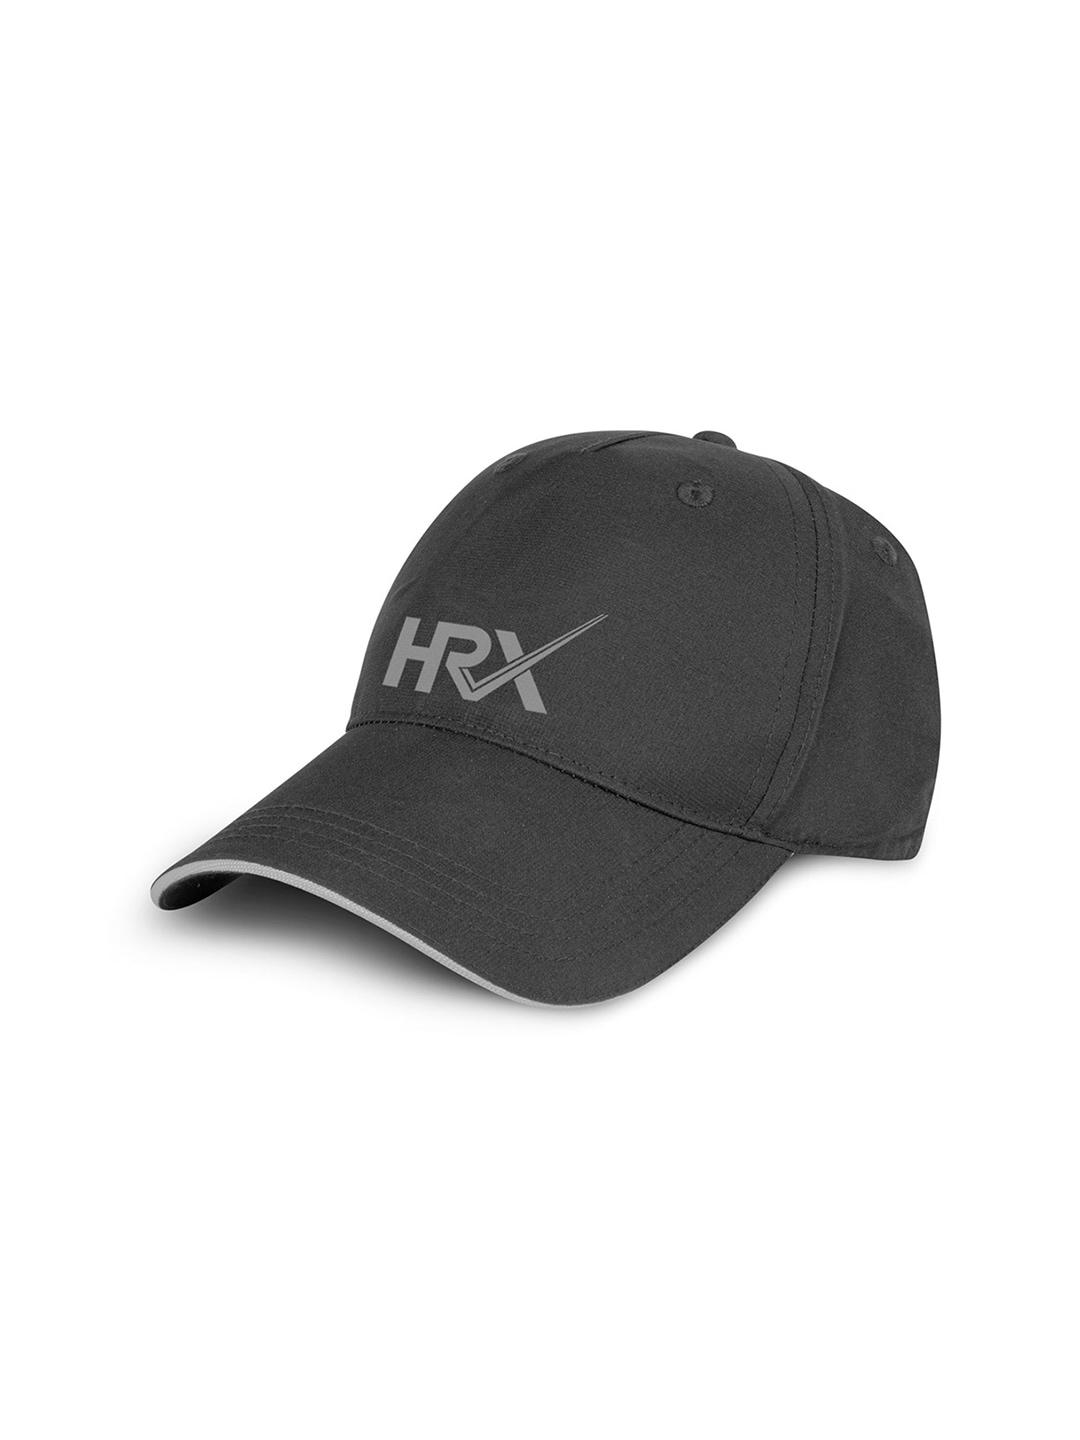 hrx-by-hrithik-roshan-unisex-embroidered-baseball-cap